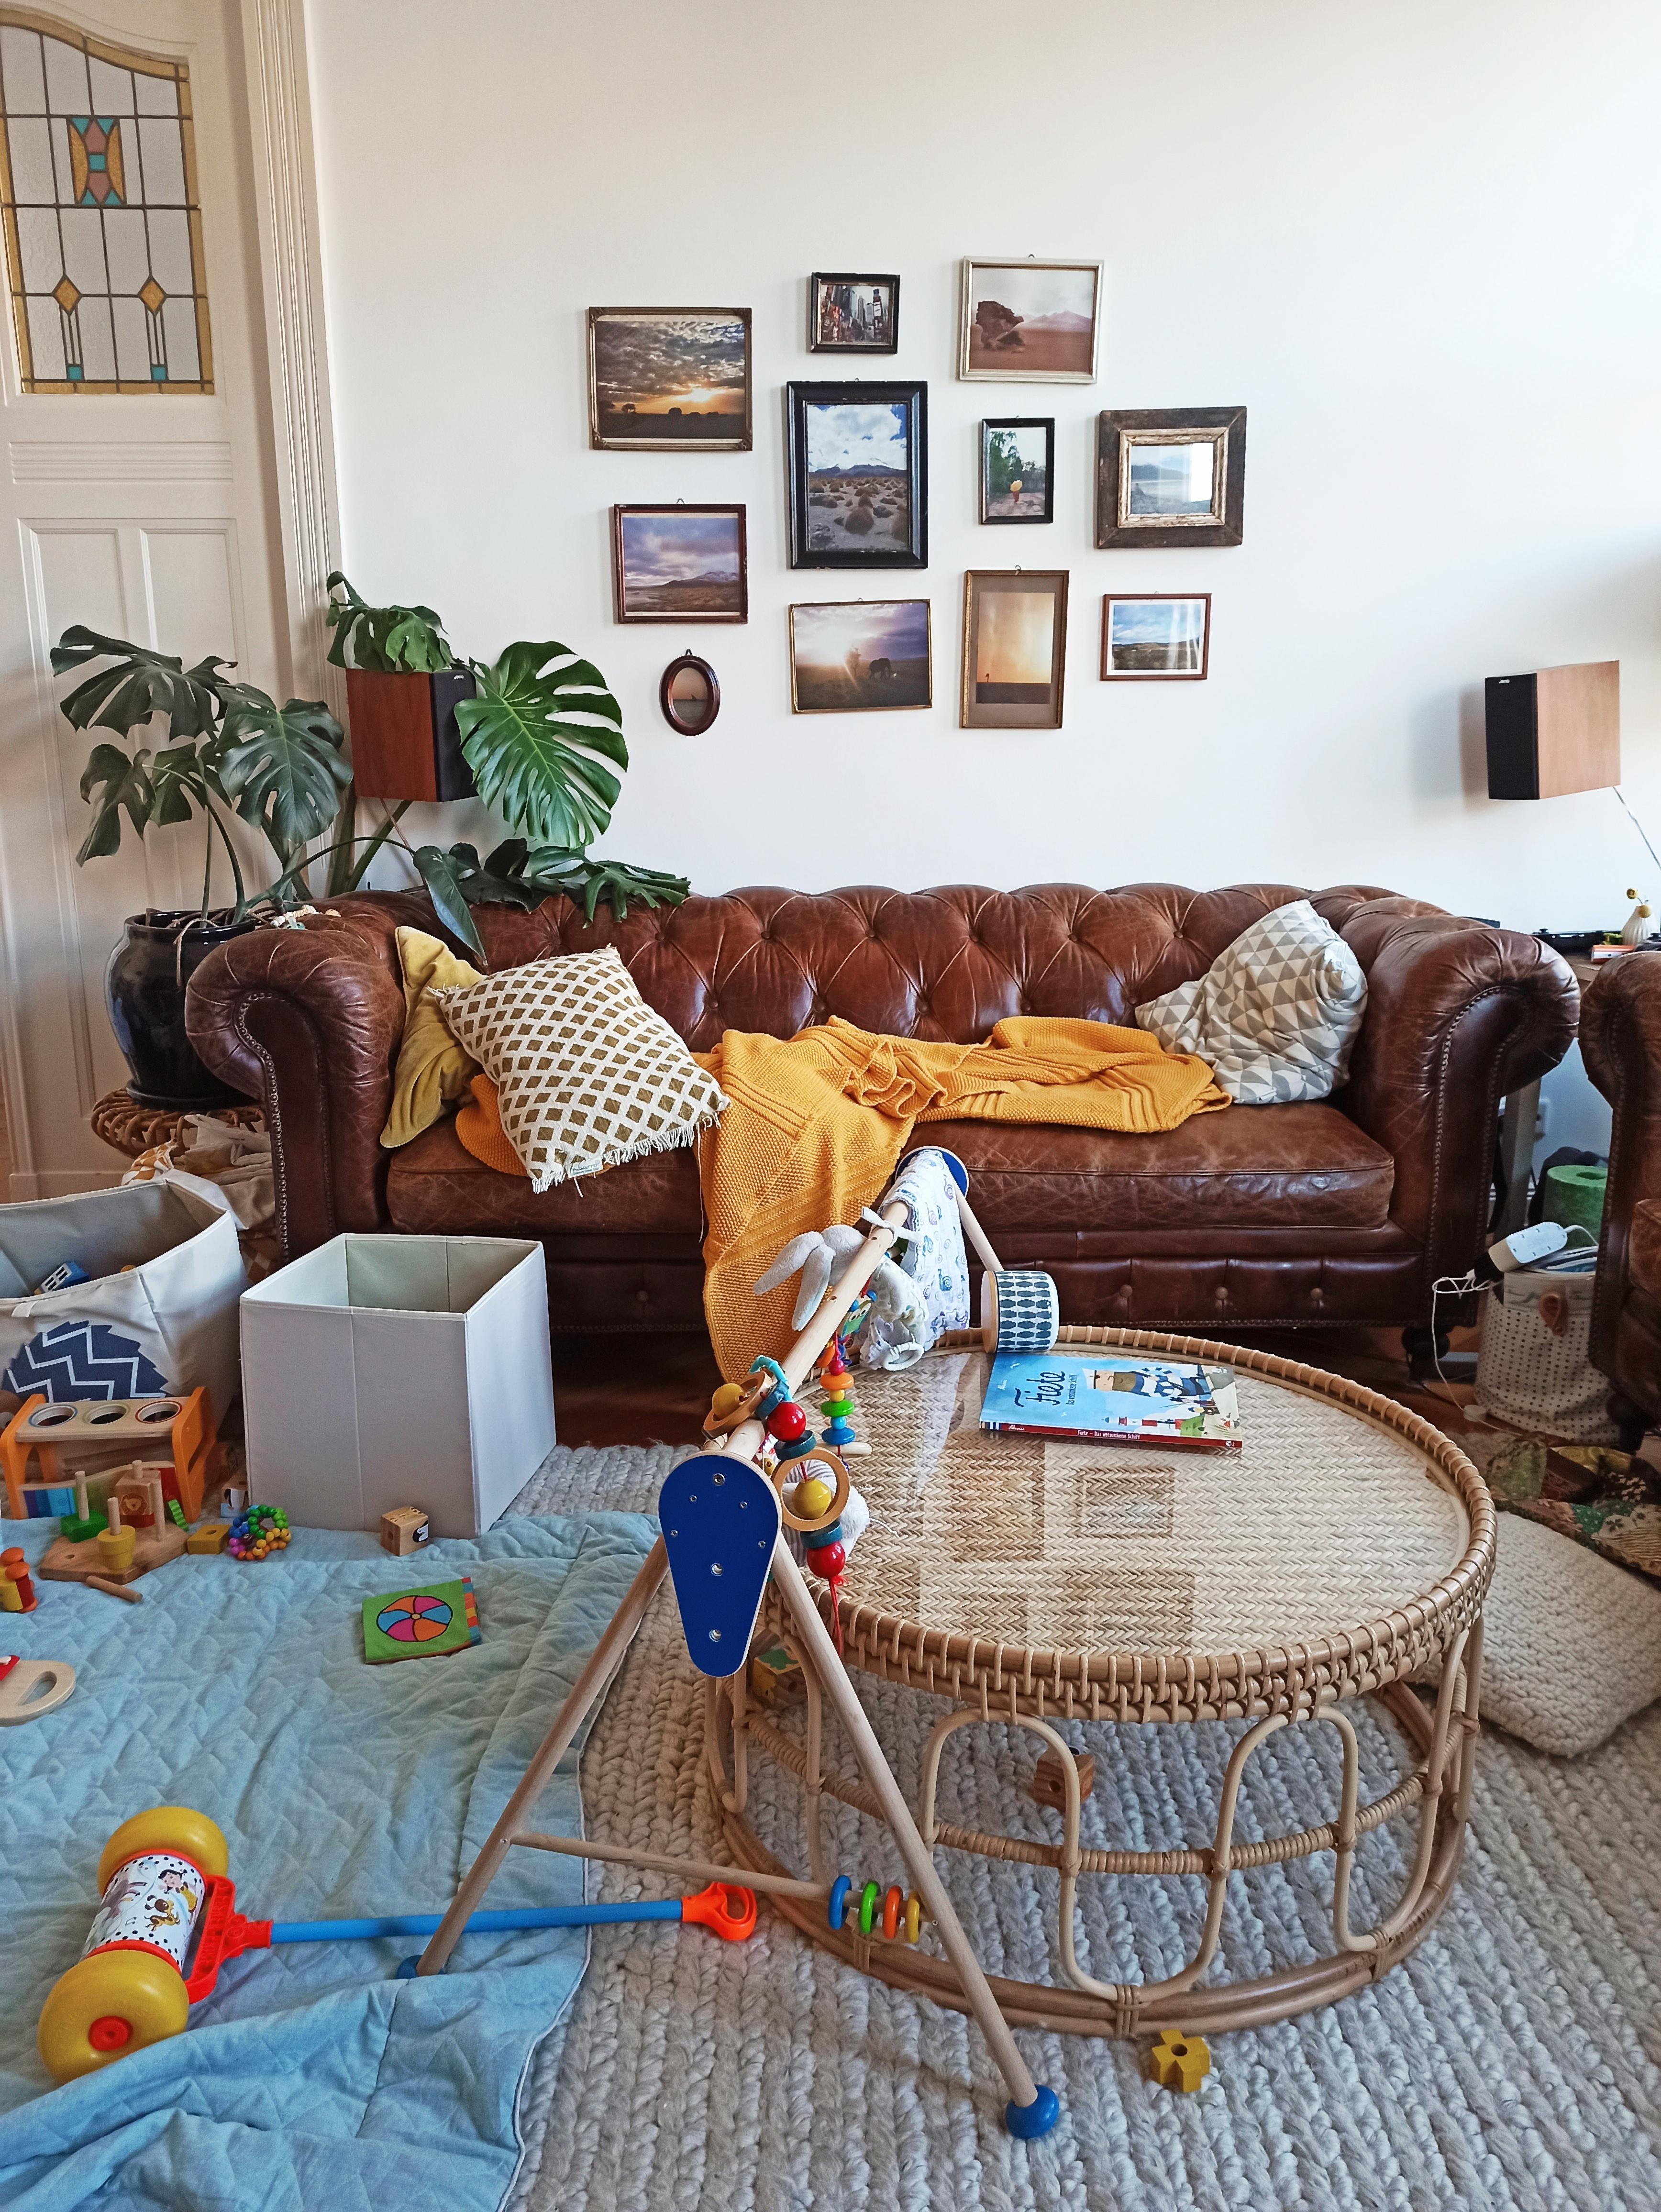 Neues Leben (Spielzeug-Chaos) vs. altes Leben (Bilder von meiner Weltreise an der Wand)😄 #couch #couchtisch #bilderwand